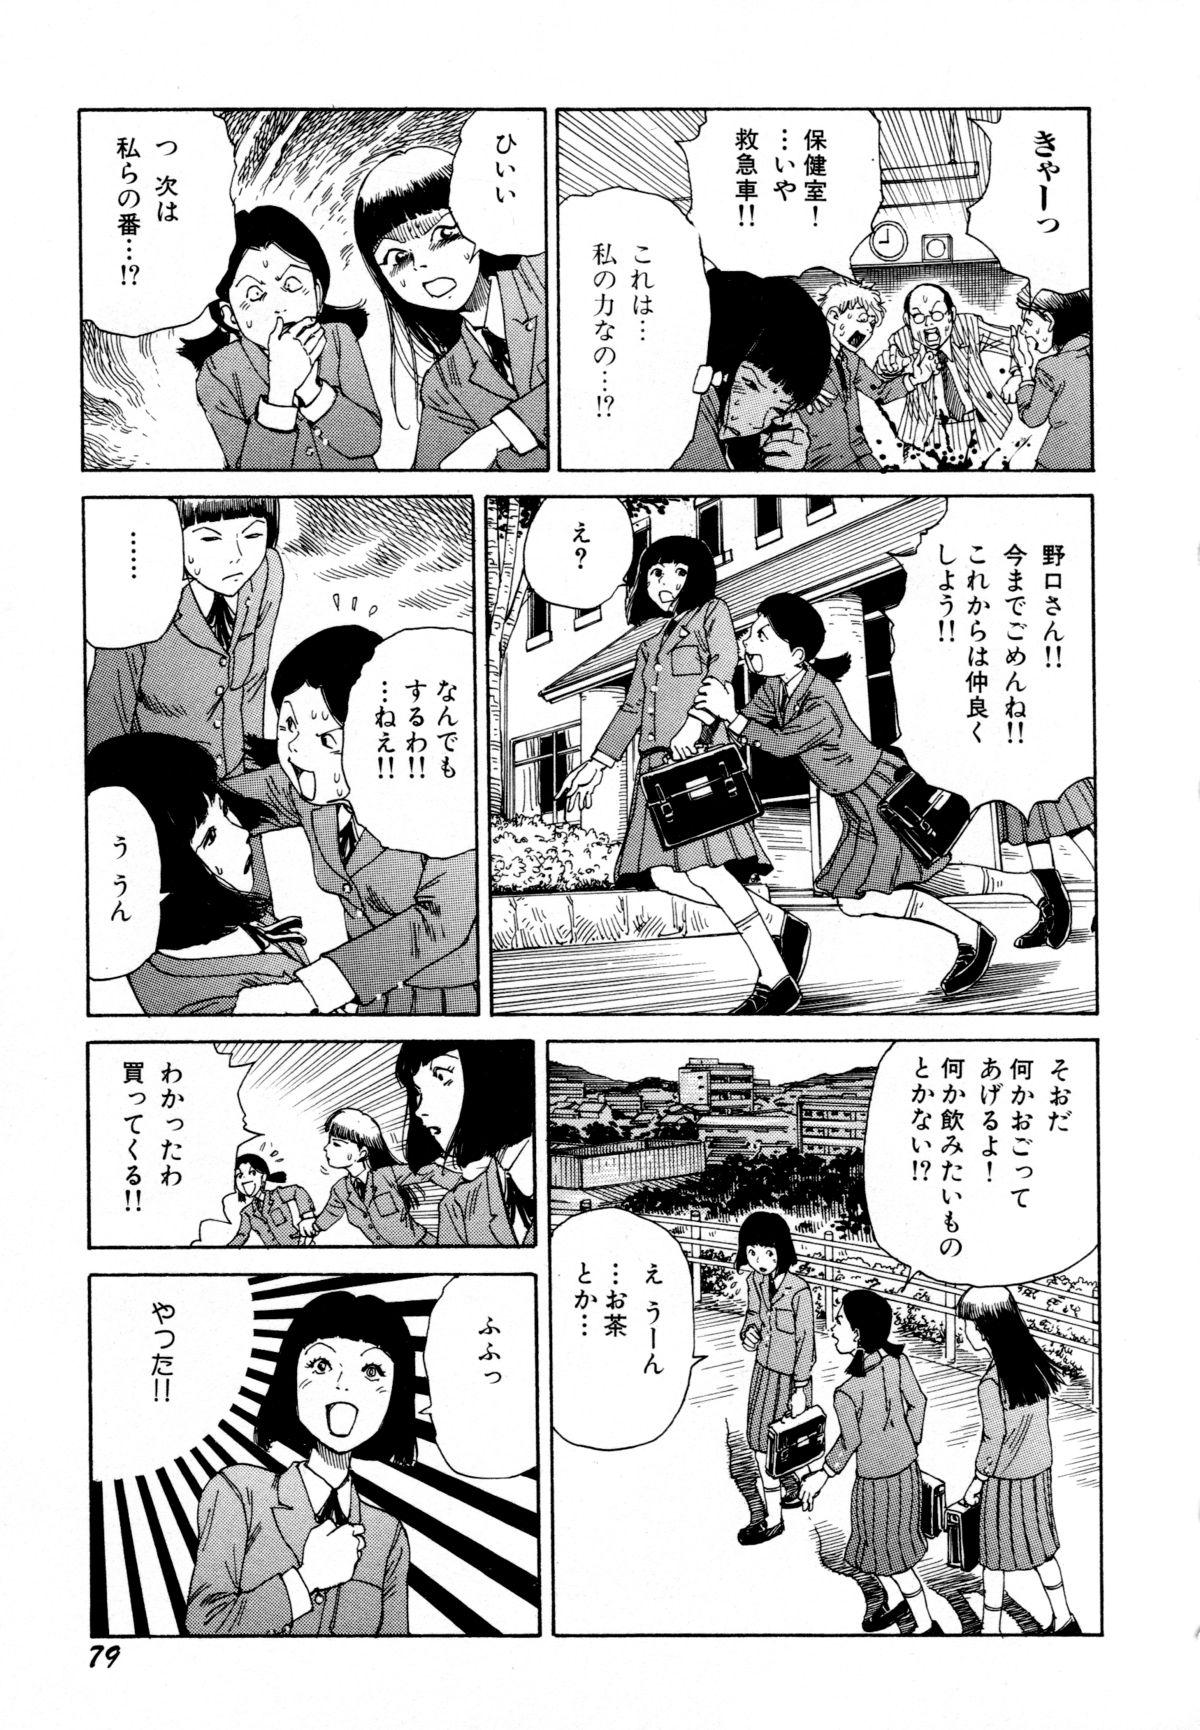 Arijigoku vs Barabara Shoujo - Antlion vs BaraBara Girl 80